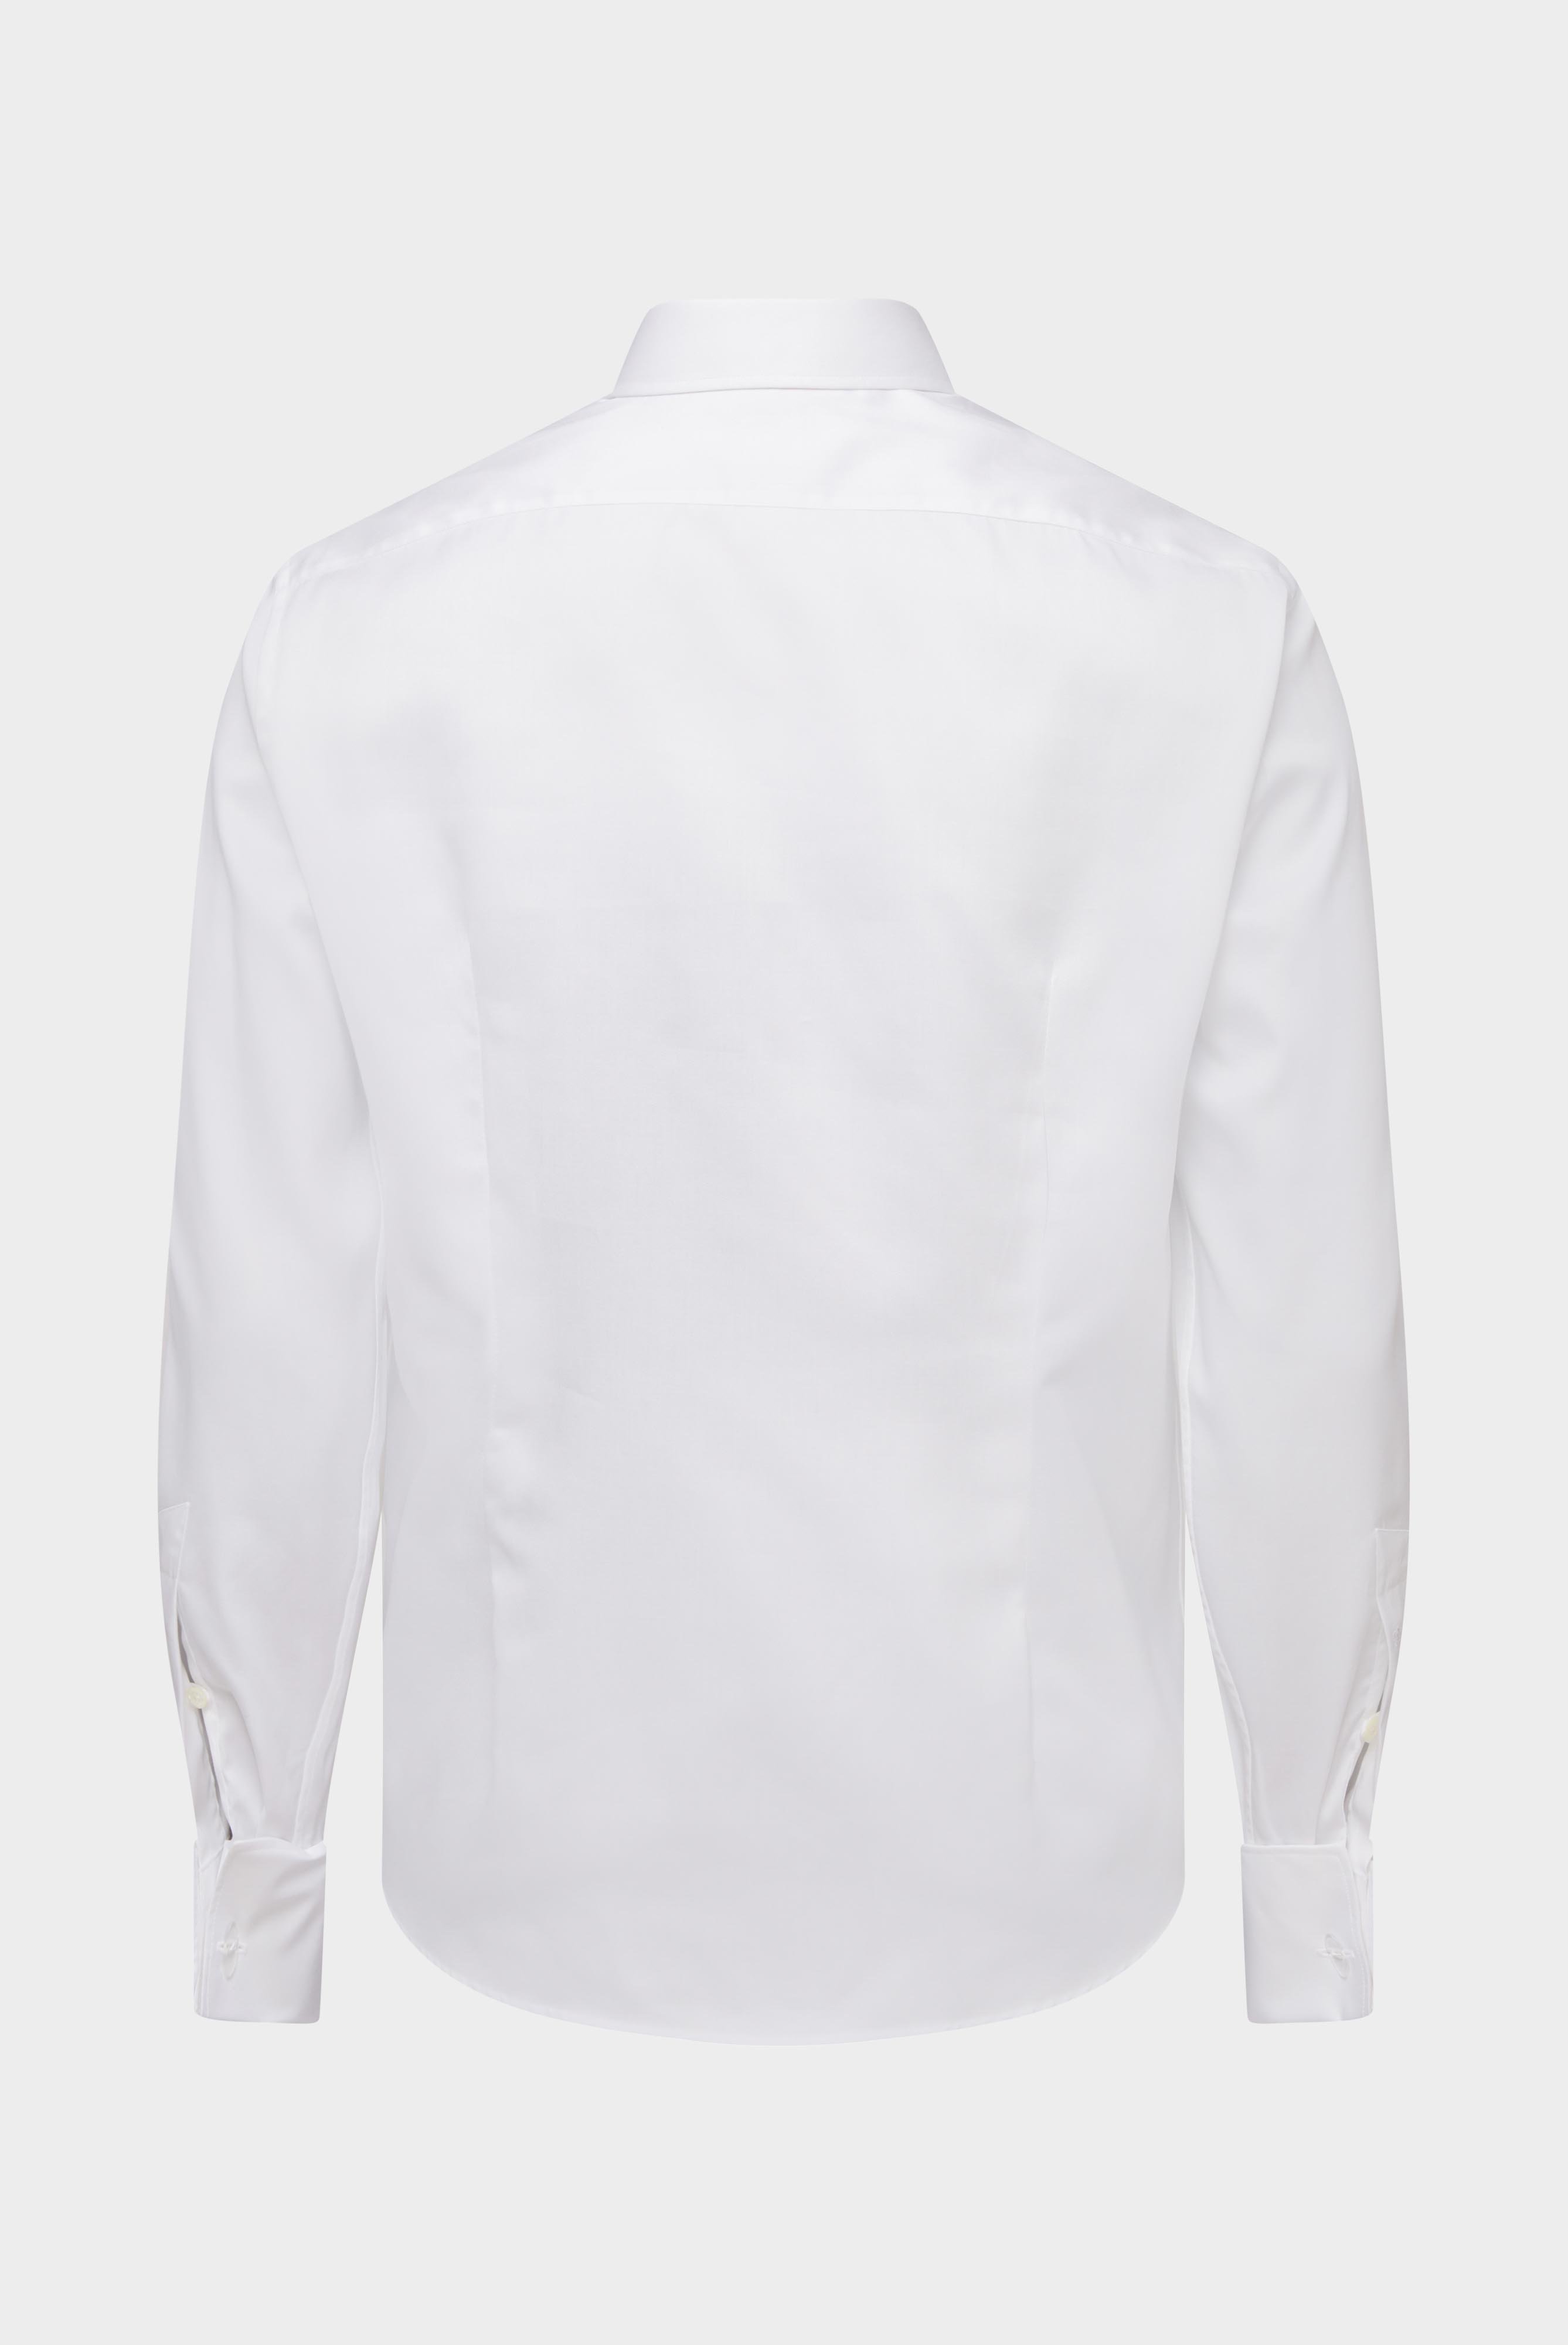 Bügelleichte Hemden+Bügelfreies Twill Hemd Tailor Fit+20.2045.BQ.132241.000.37